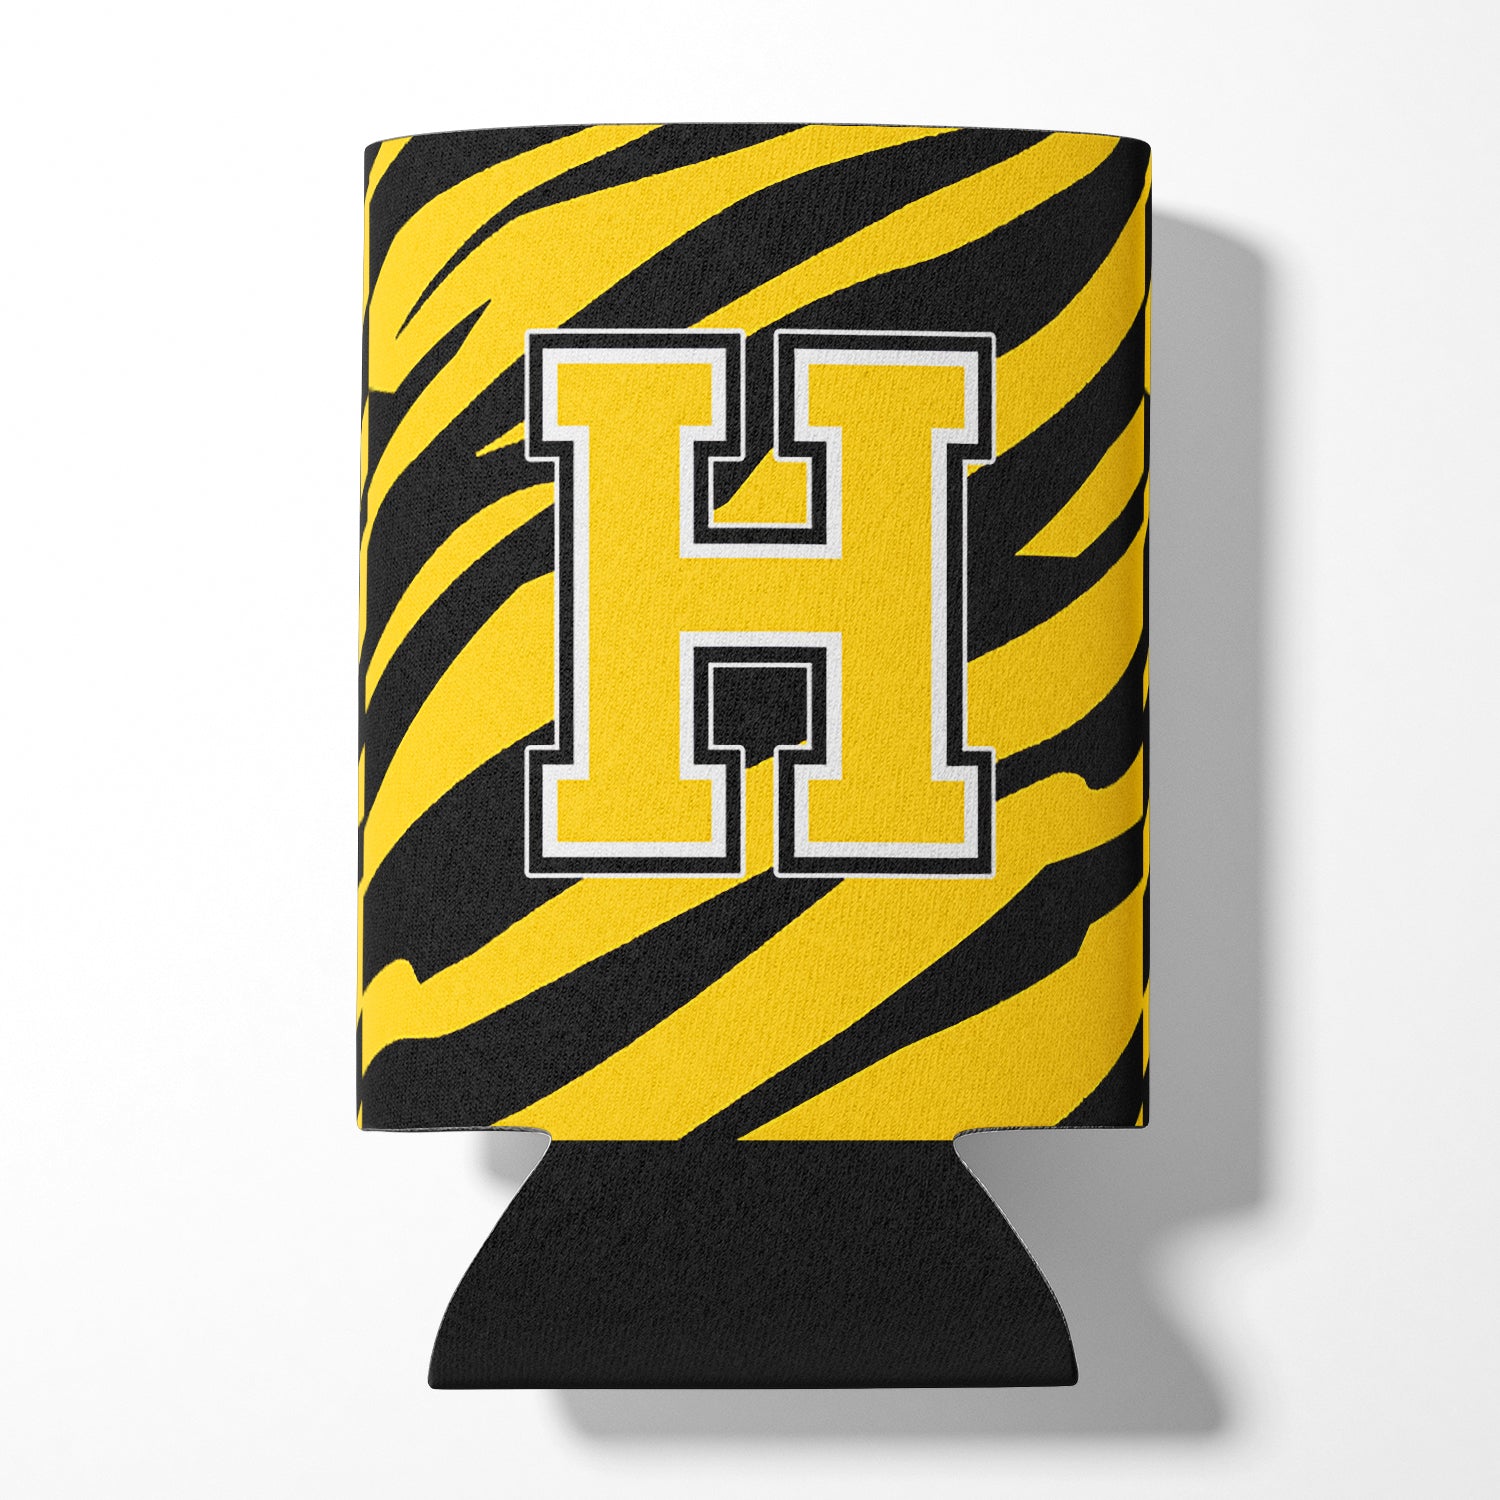 Lettre H monogramme initial - Tiger Stripe - Black Gold Can Beverage Insulator Hugger